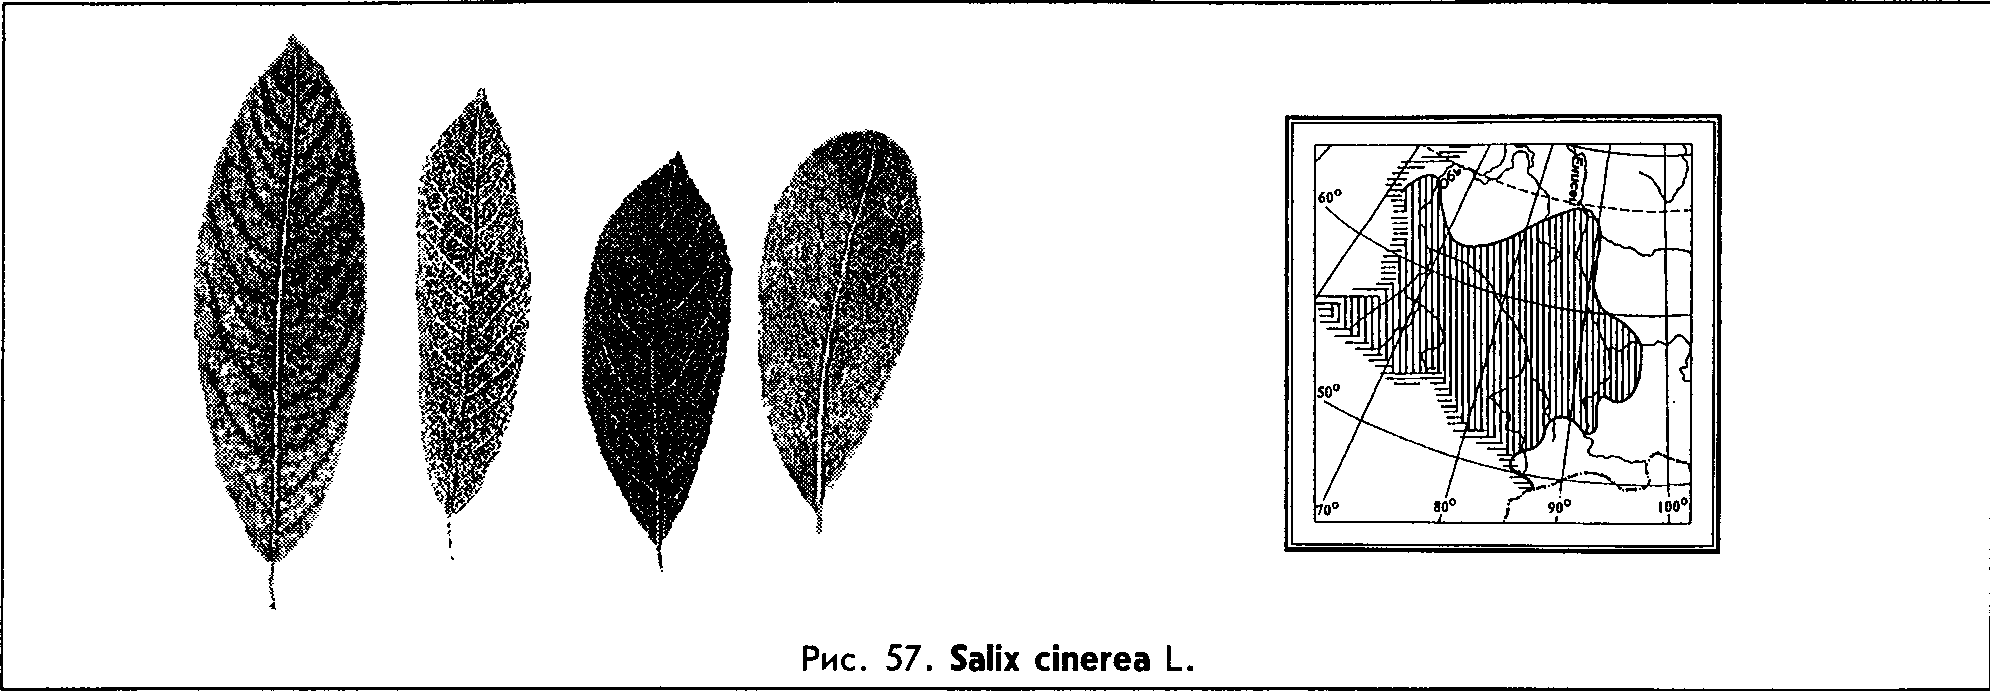 Salix cinerea L. — Ива серая, пепельная, чернолоз (Ш) Salix-14